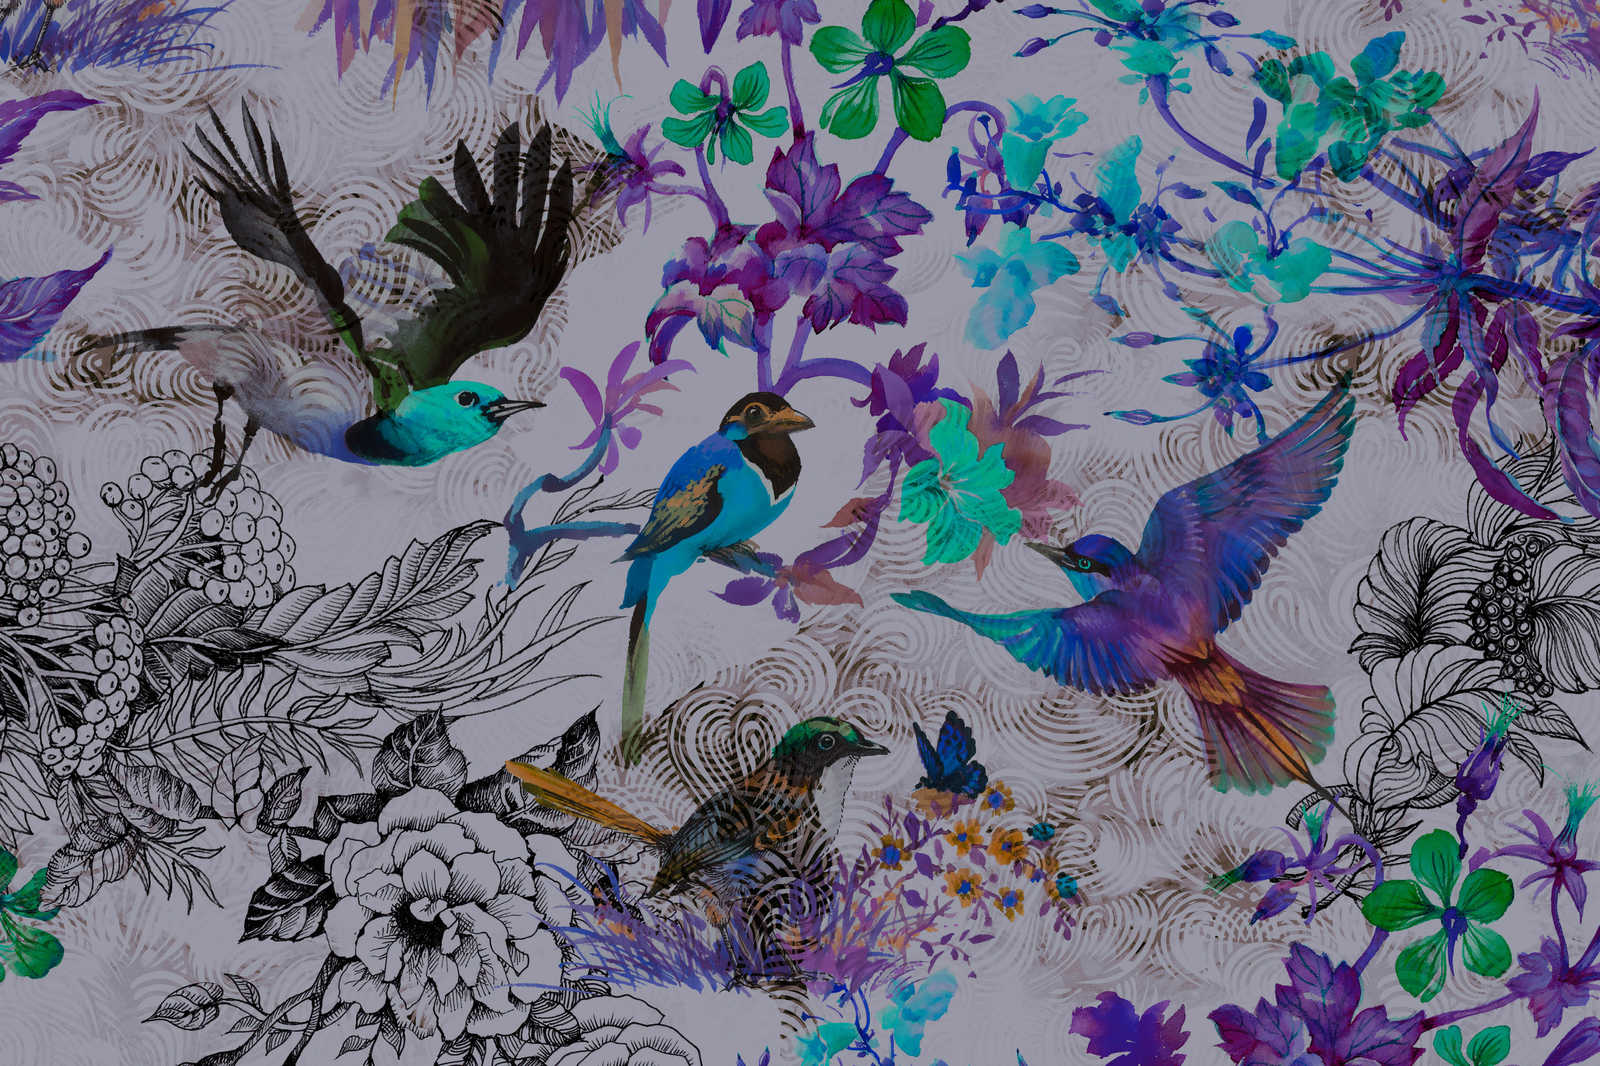             Quadro su tela viola con fiori e uccelli - 0,90 m x 0,60 m
        